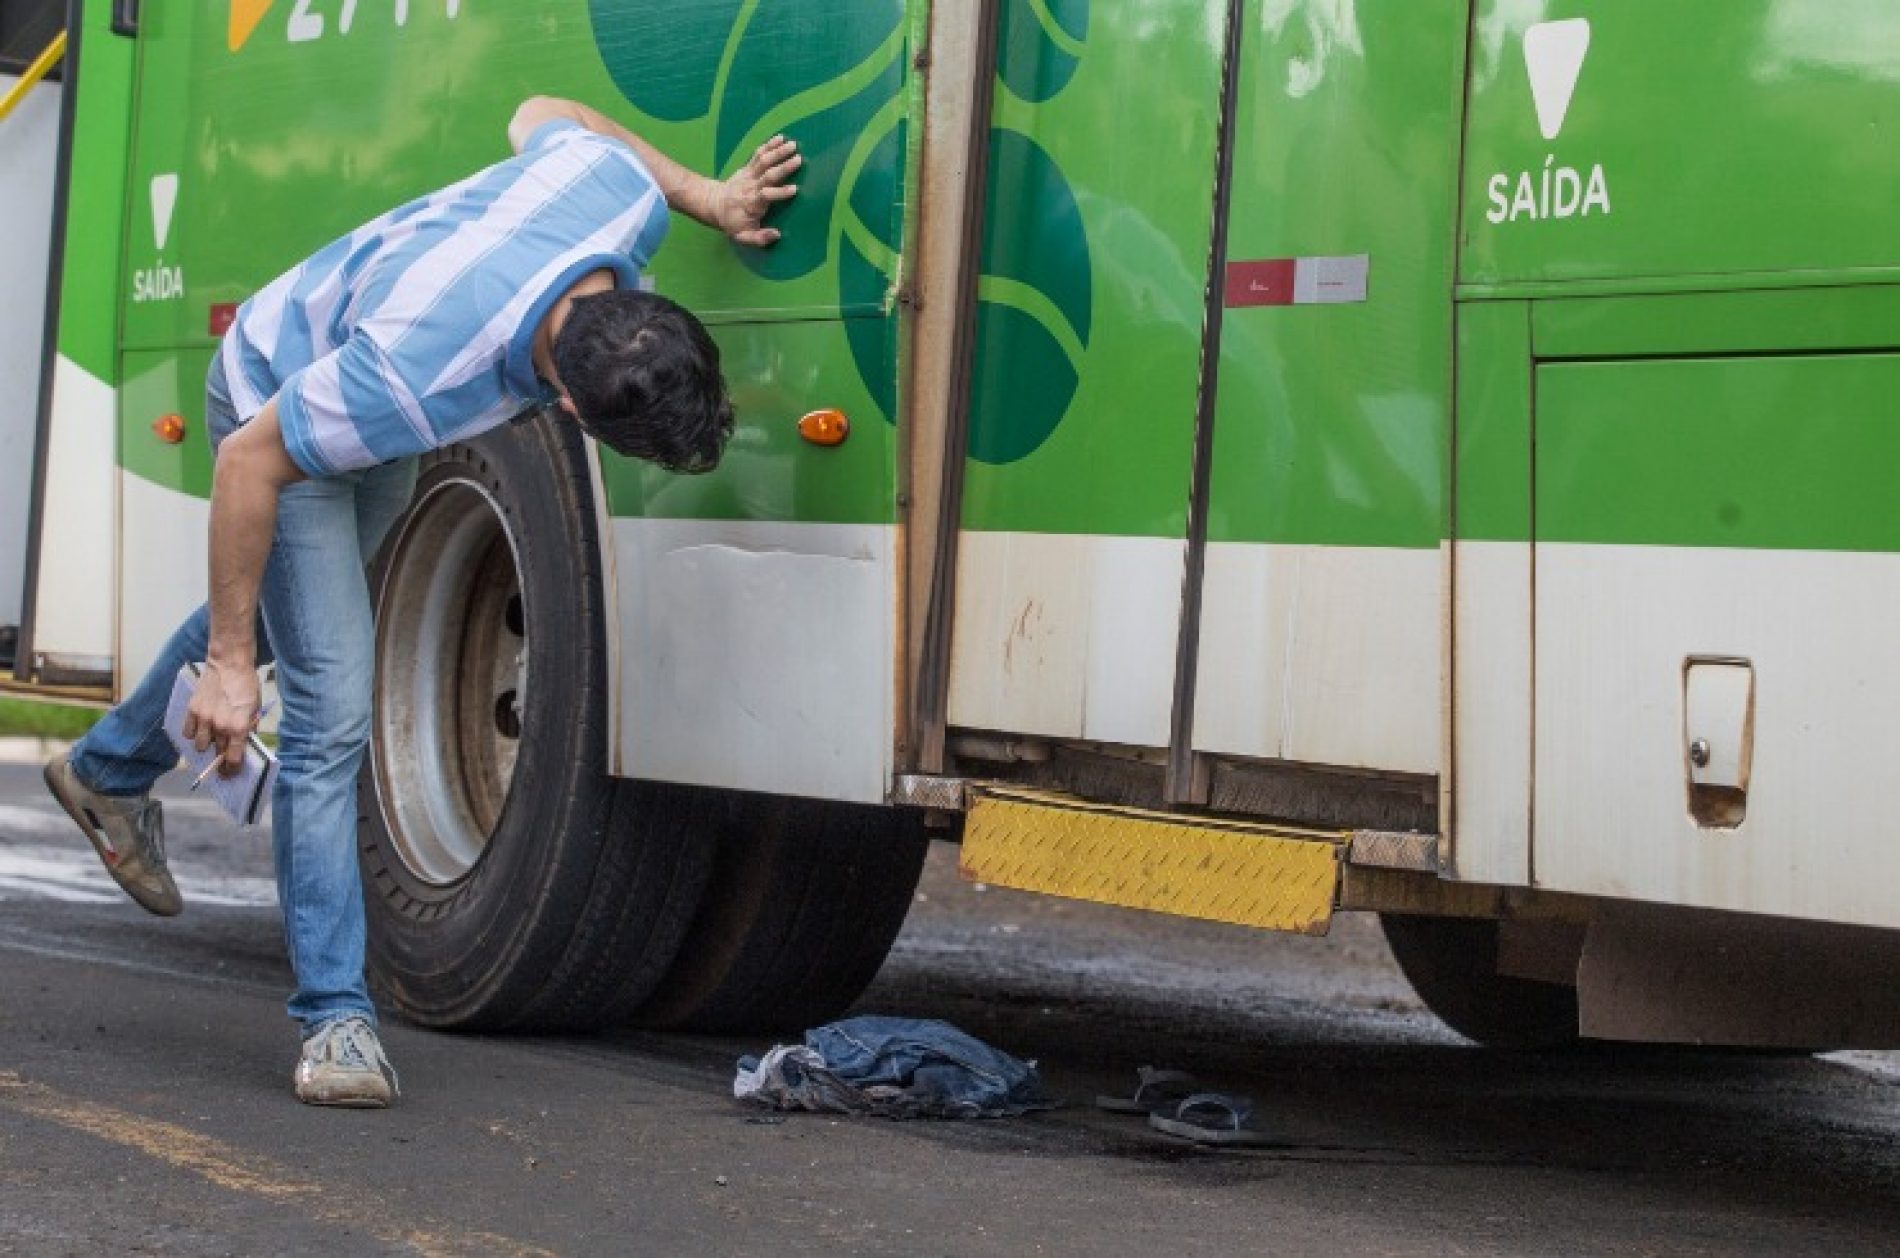 REGIÃO: Menino é arrastado por ônibus após desrespeitar sinal de trânsito